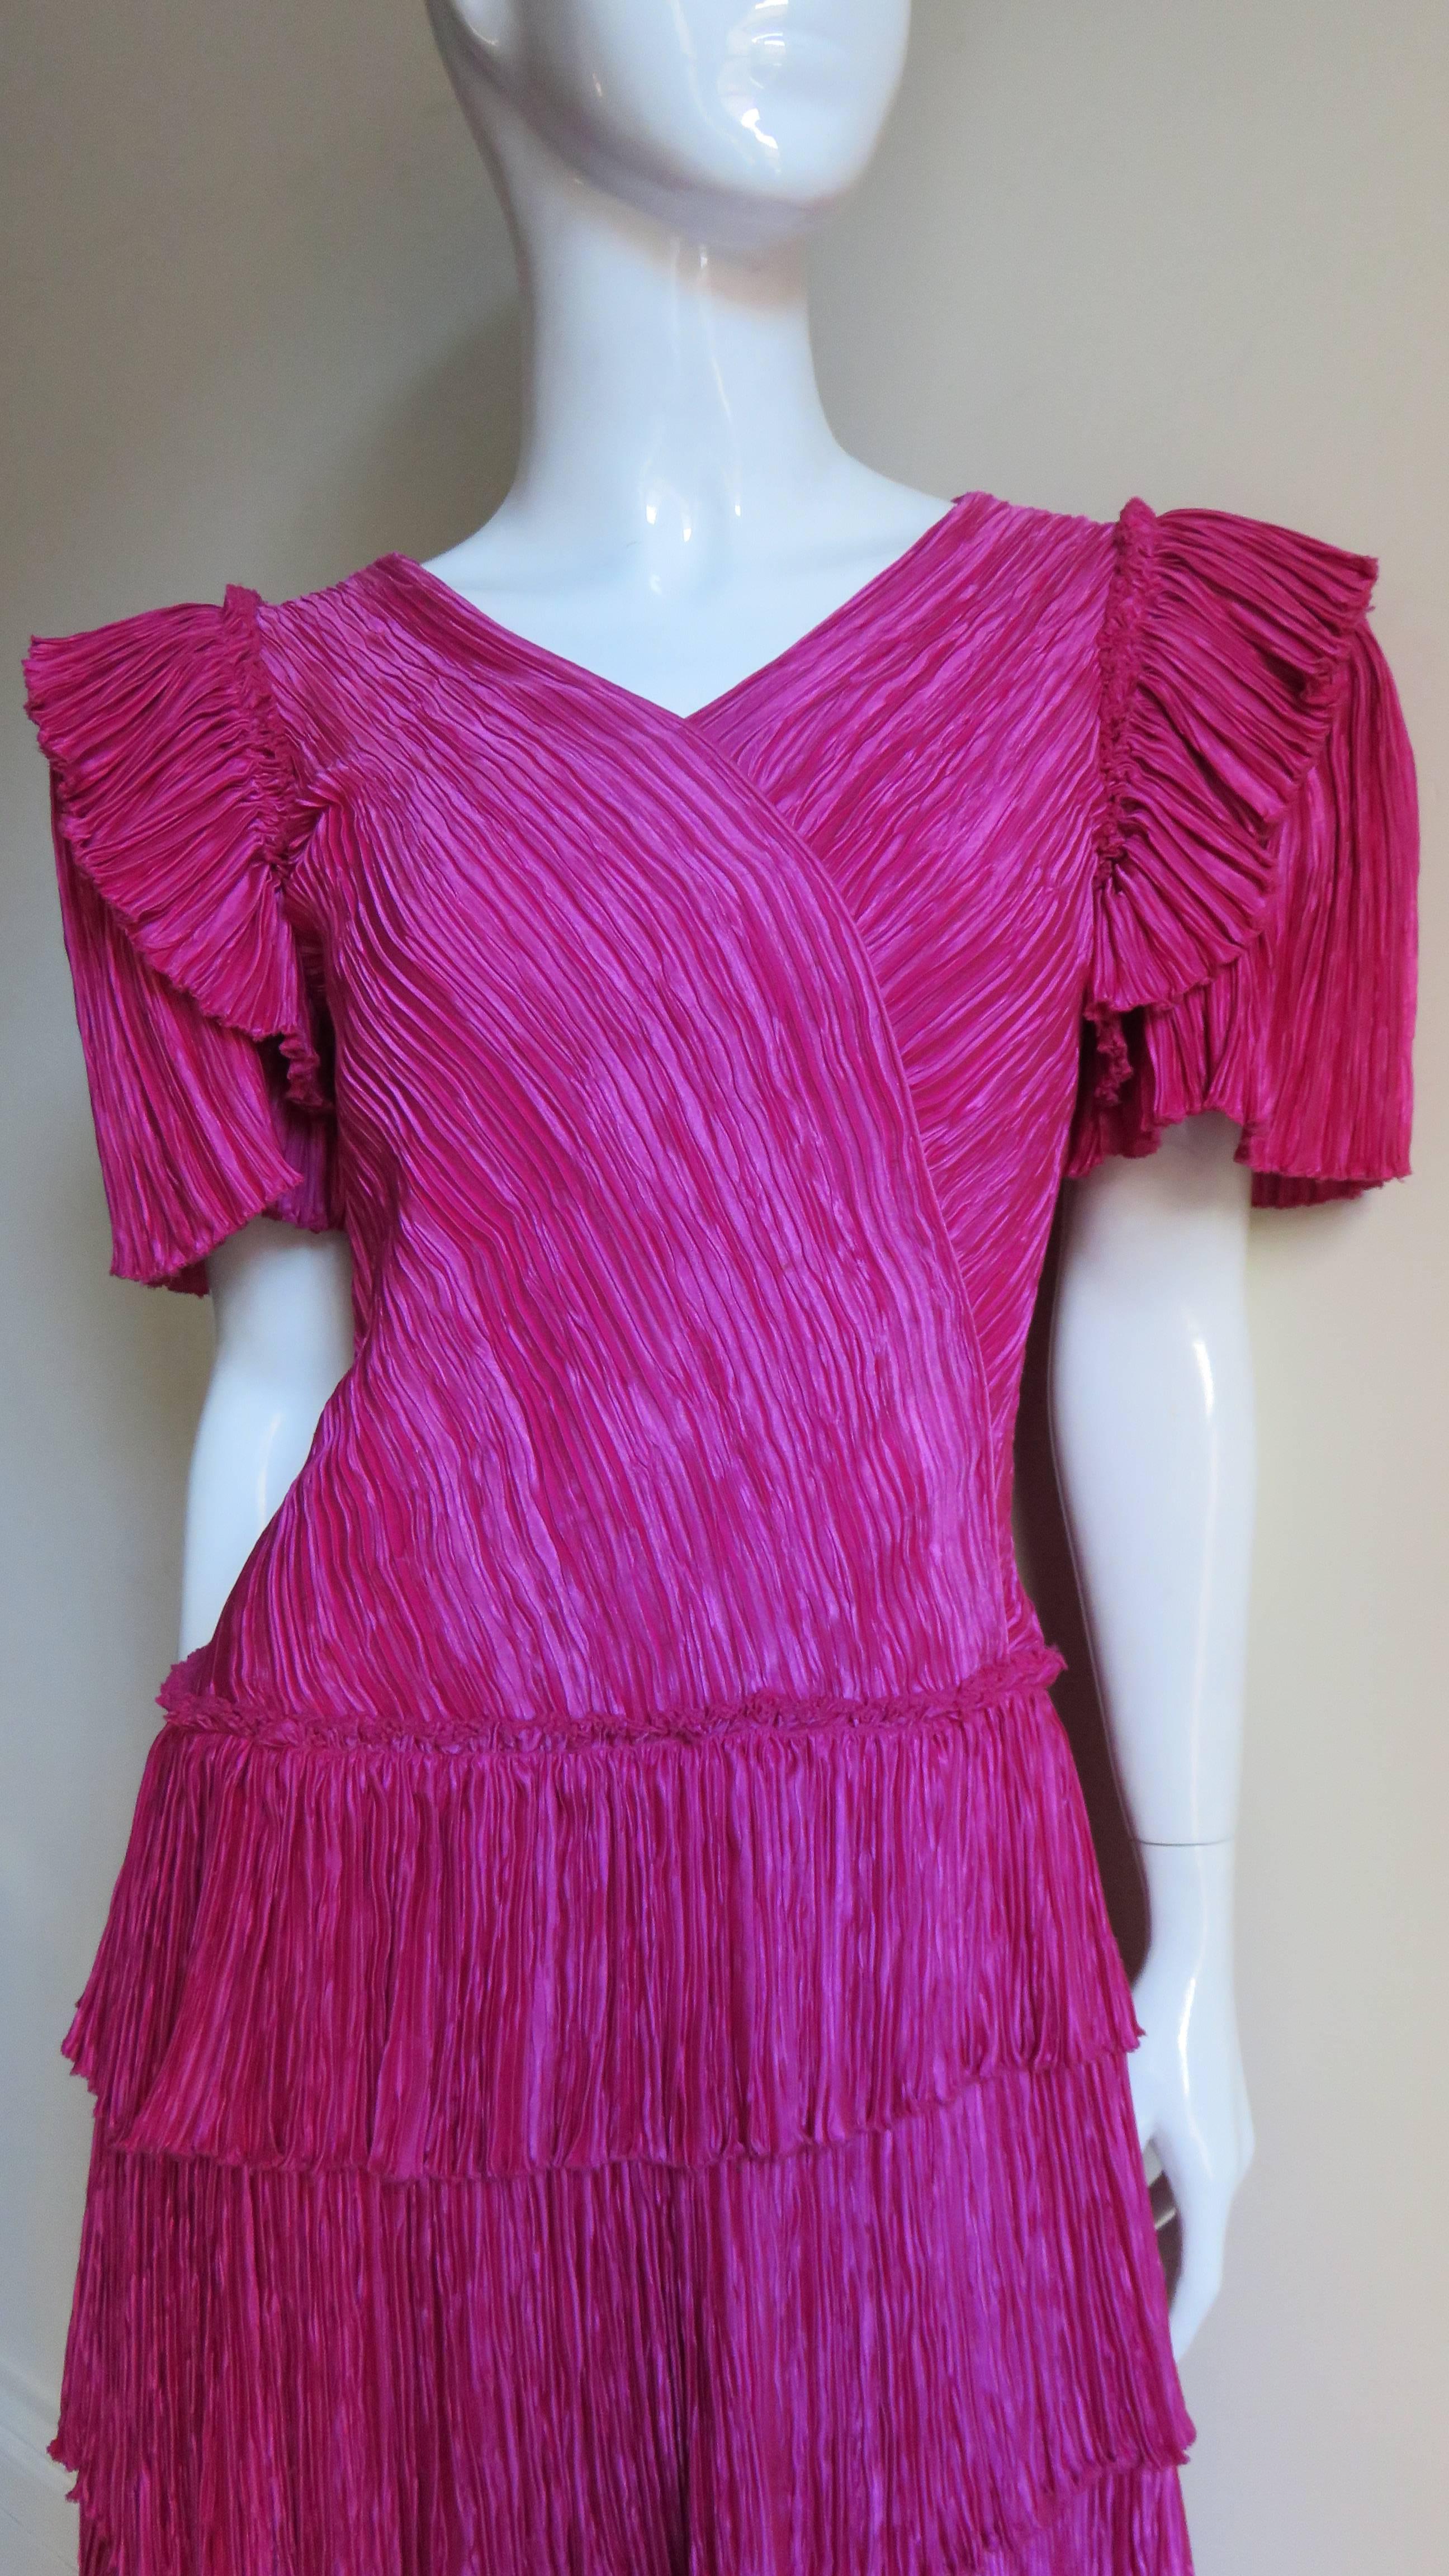 Une jolie robe micro plissée en soie rose de la ligne Couture de Mary McFadden.  Elle a une encolure en V, un effet enveloppant sur le corsage devant et derrière et les manches courtes ont un volant autour des épaules.  La jupe A line se compose de